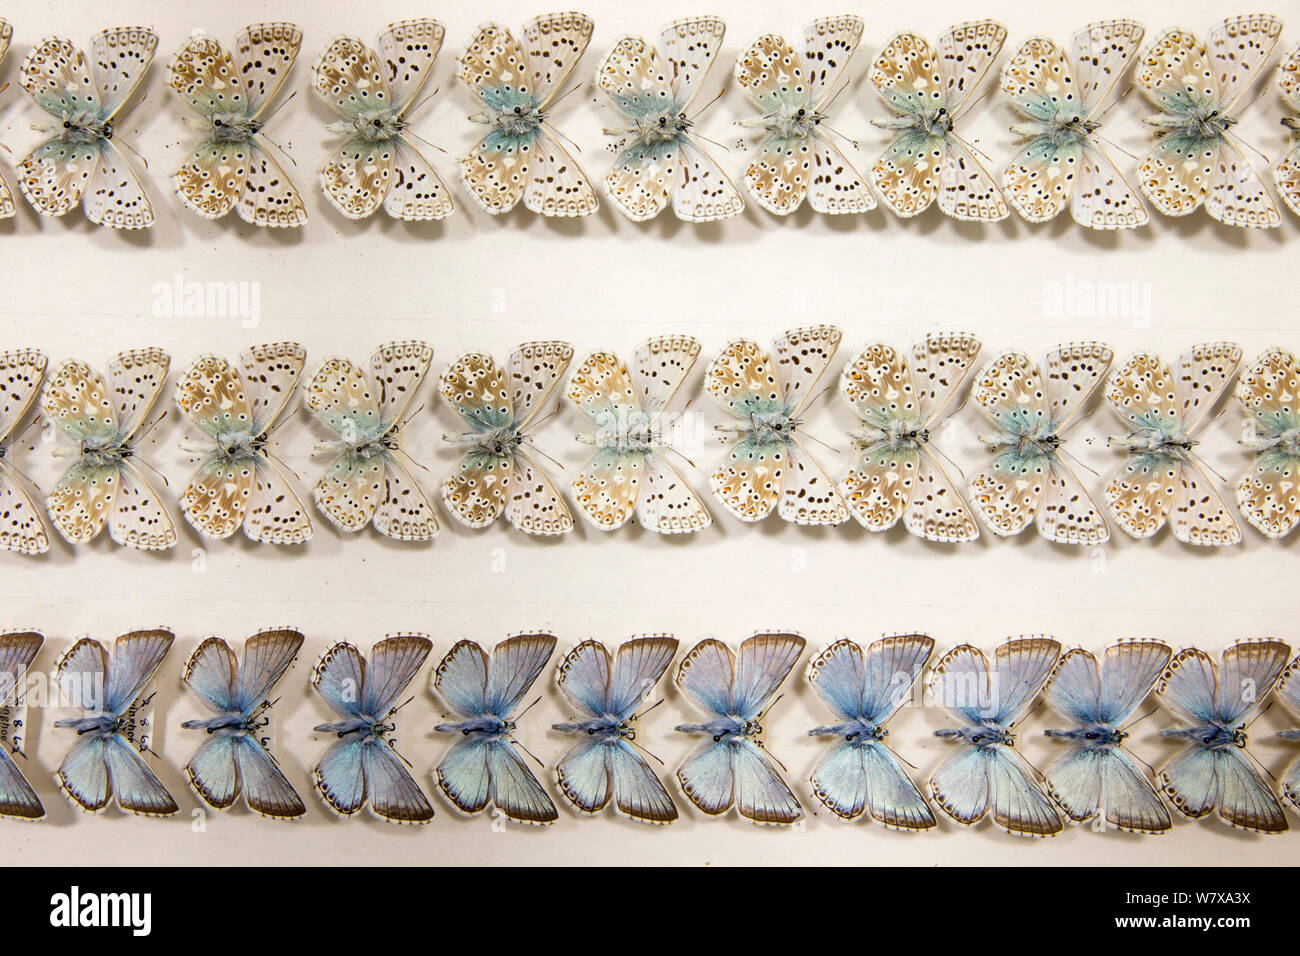 Chalkhill blu (Polyommatus coridon) farfalla - museo esemplari, dorsale e ventrale di vista che mostra lievi variazioni nelle dimensioni e colorazione, Tyne and Wear archivi e musei Foto Stock